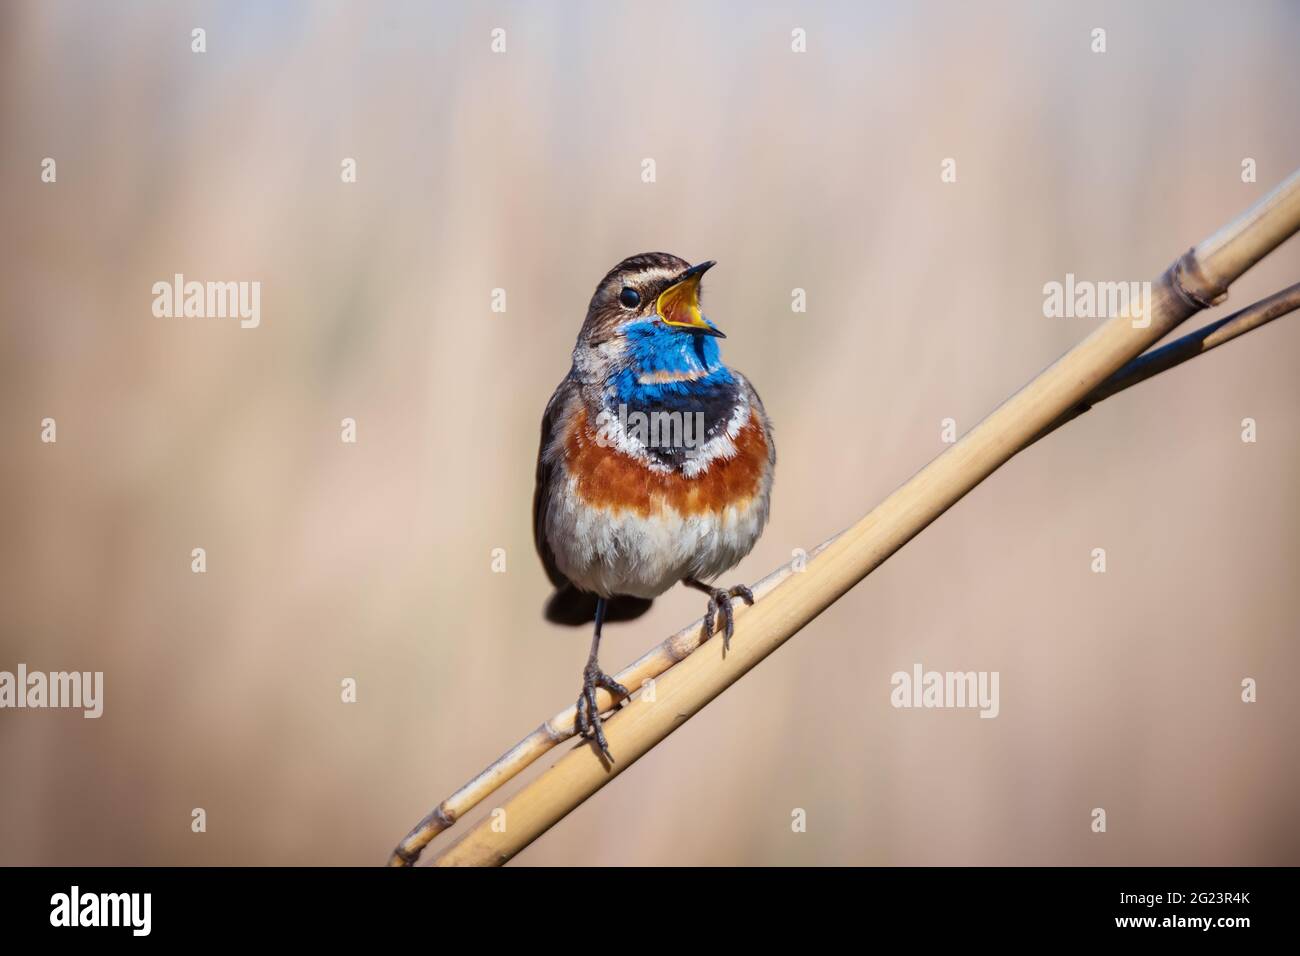 Piccolo blugola maschio songbird in canne secche su sfondo natura Foto Stock